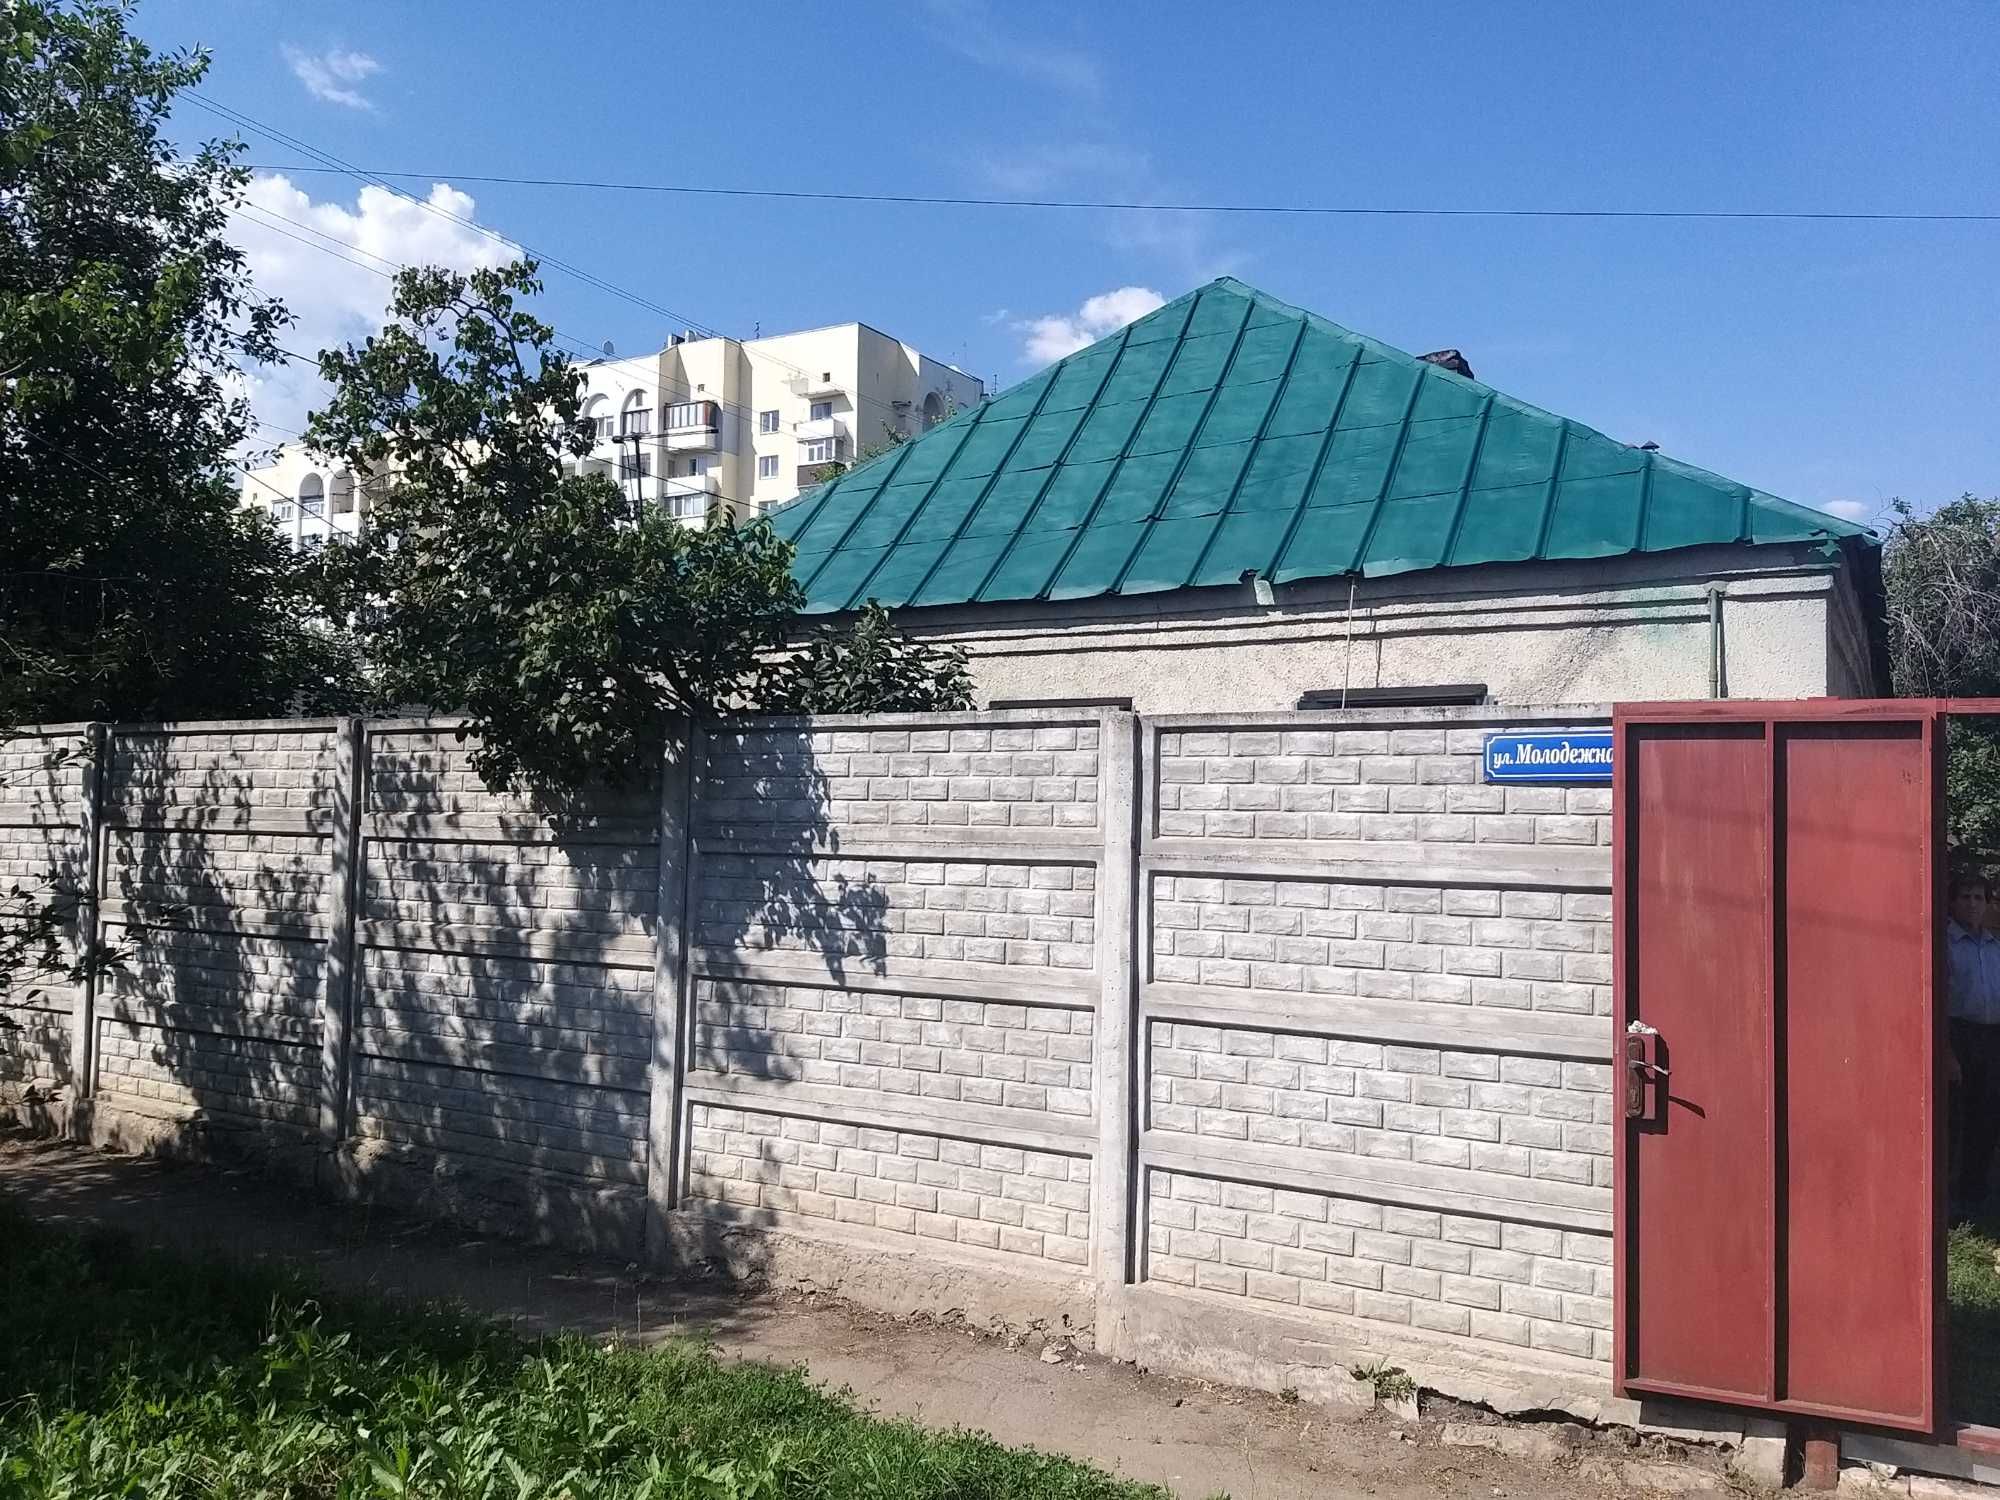 Покраска крыш металлических, шиферных по Харькову и области